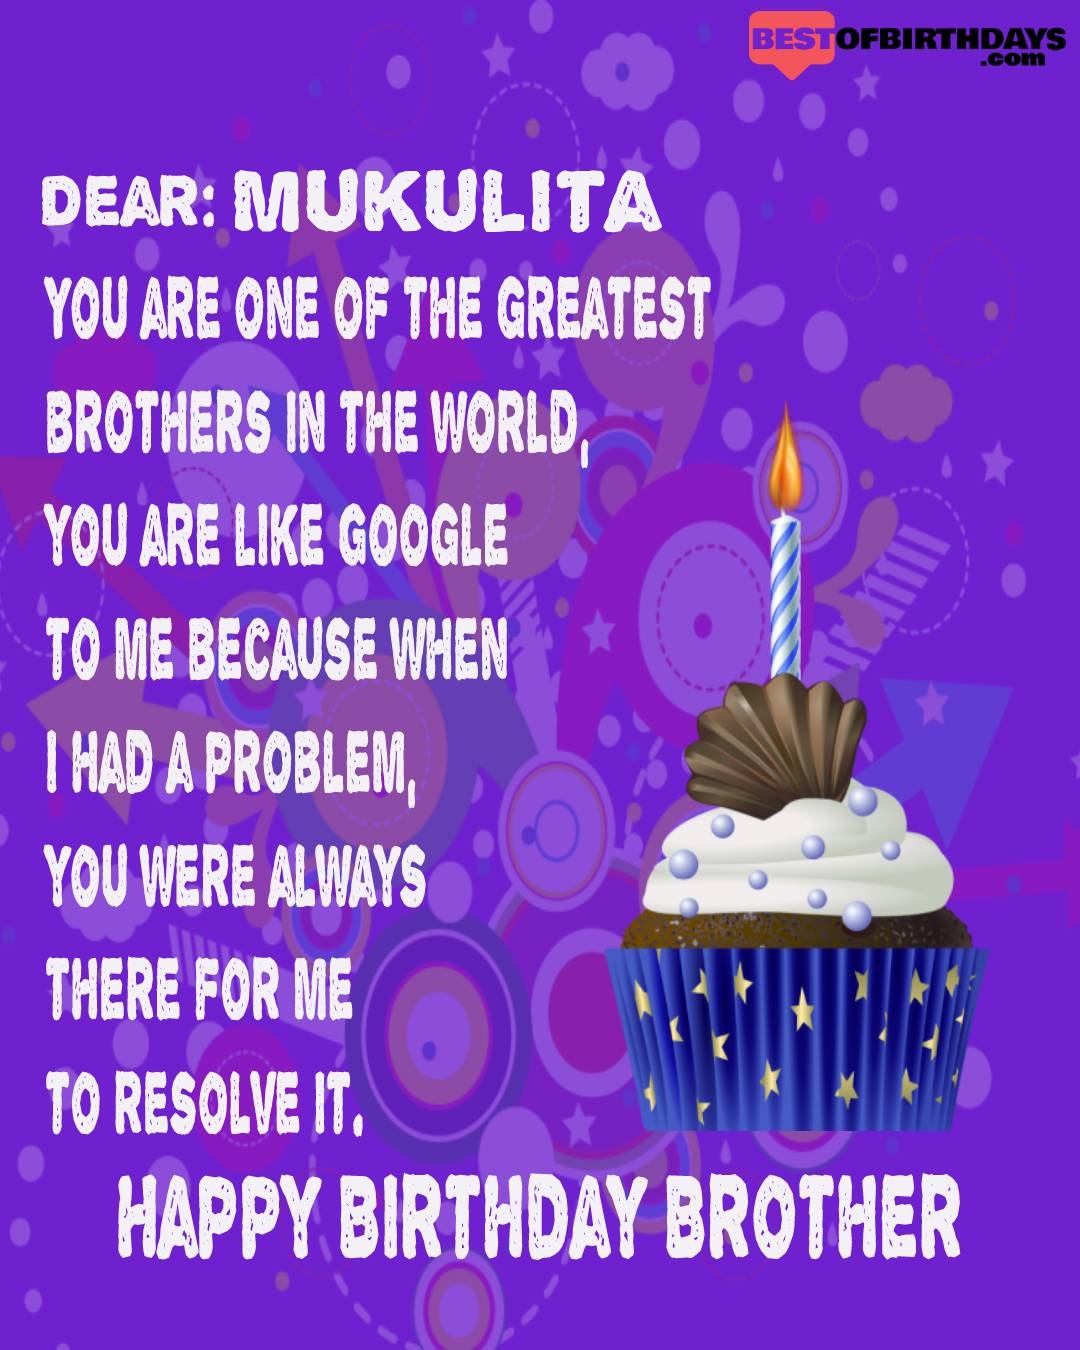 Happy birthday mukulita bhai brother bro